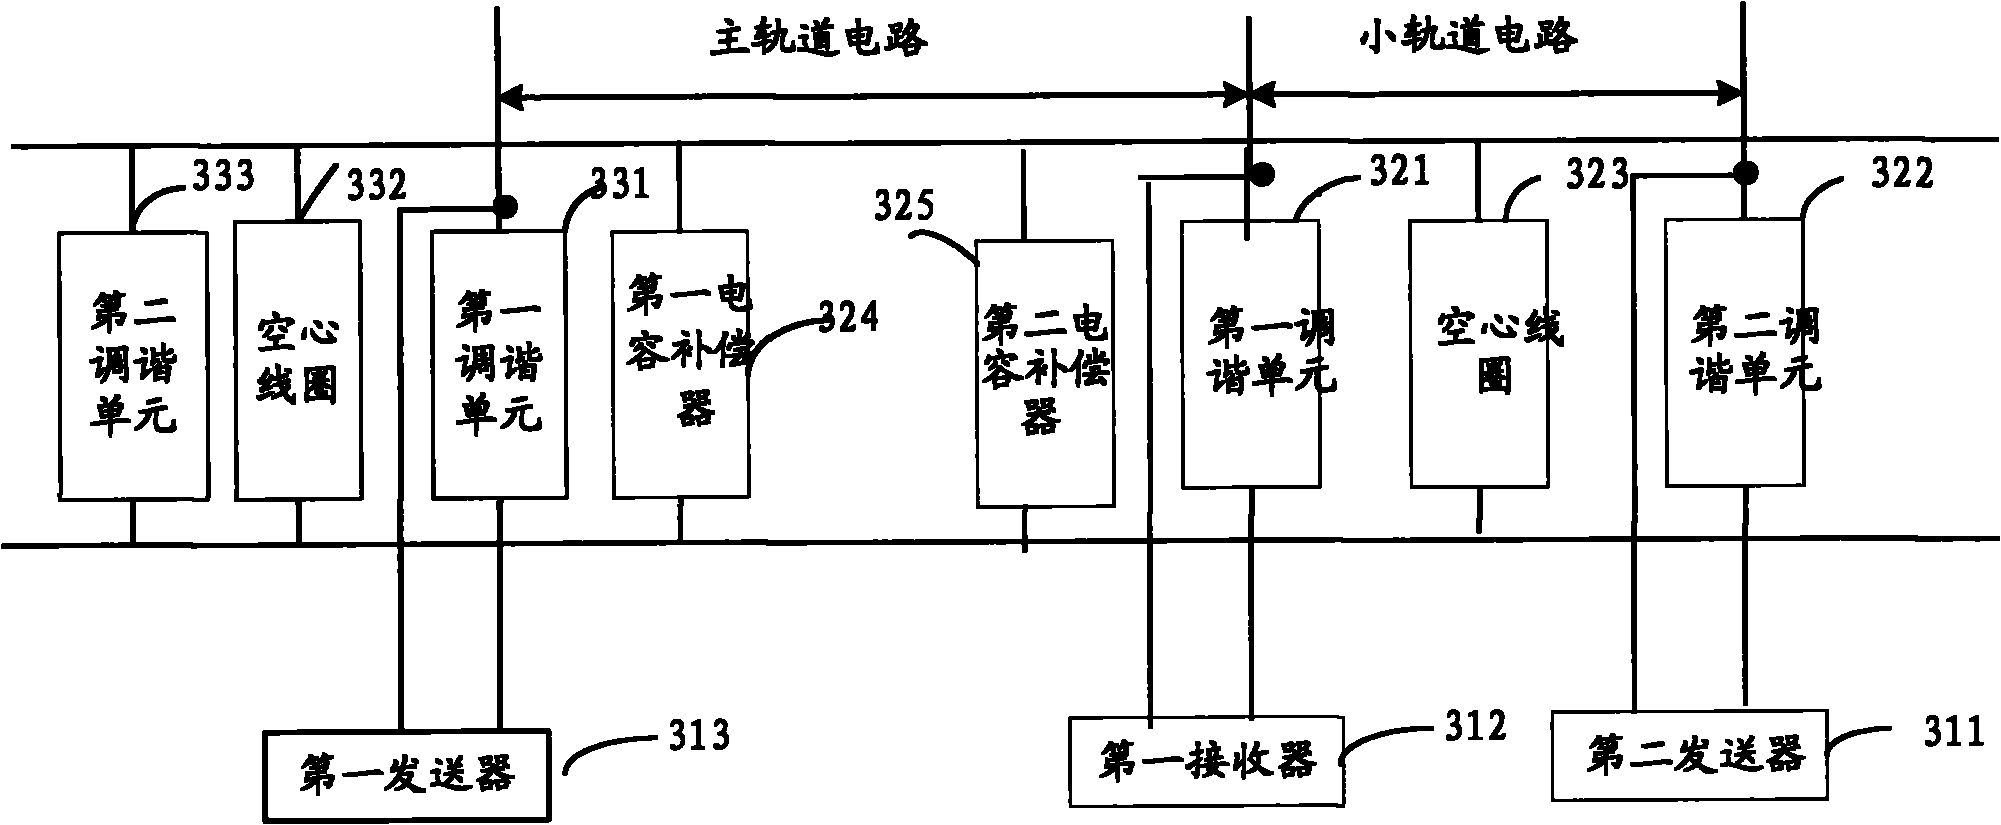 Non-insulation track circuit